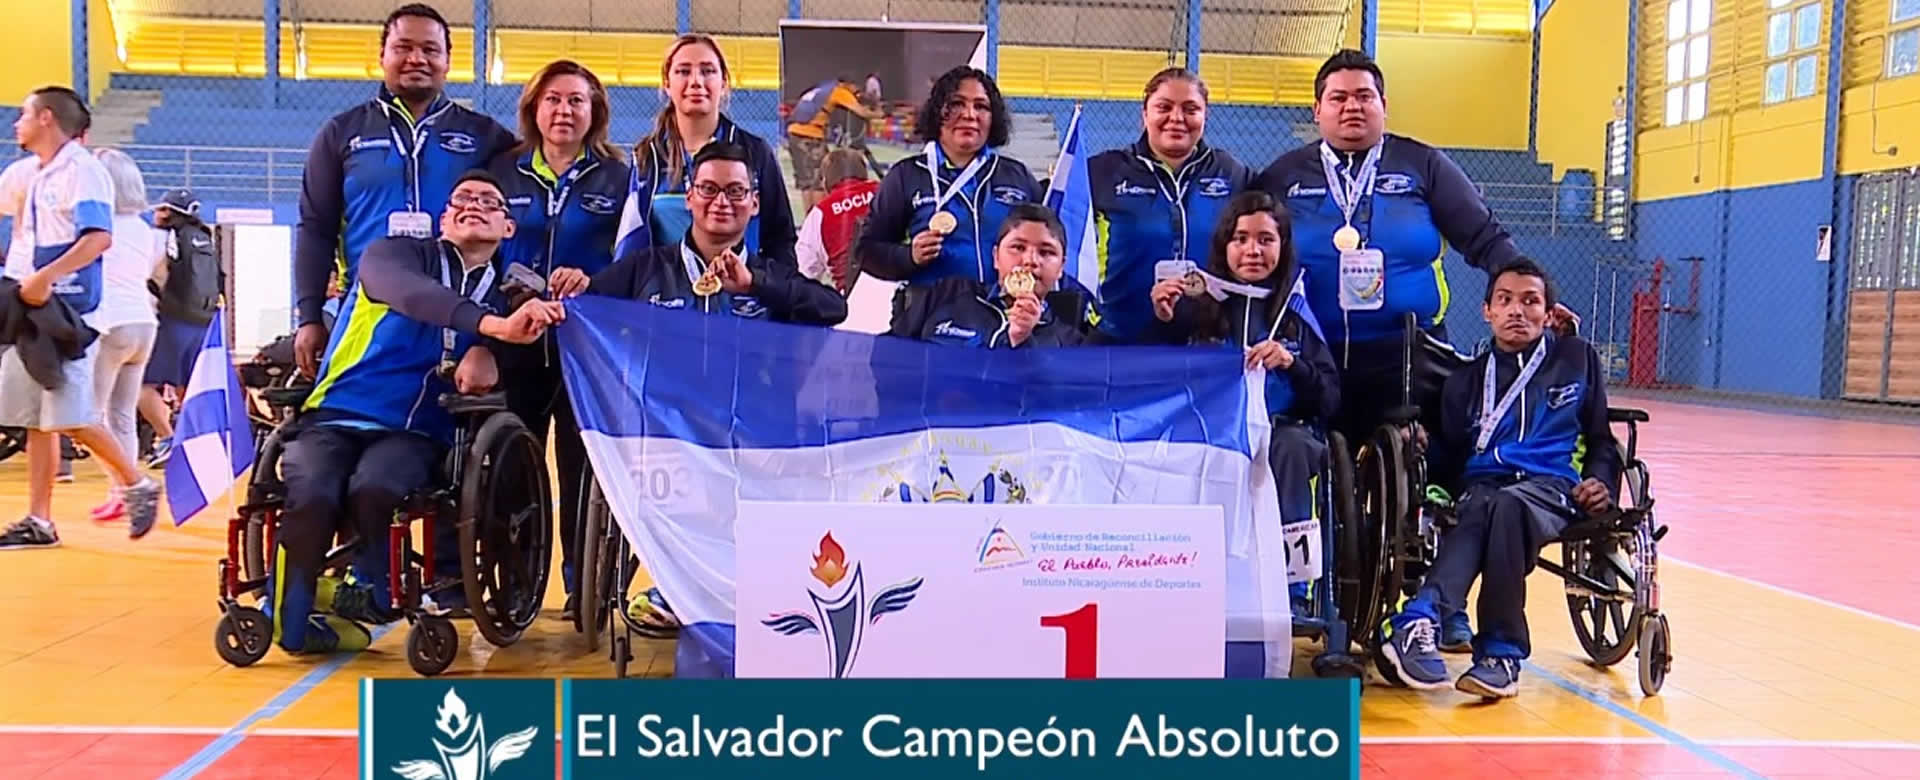 El Salvador campeón absoluto de Boccia en los Juegos Paralímpicos, Managua 2018